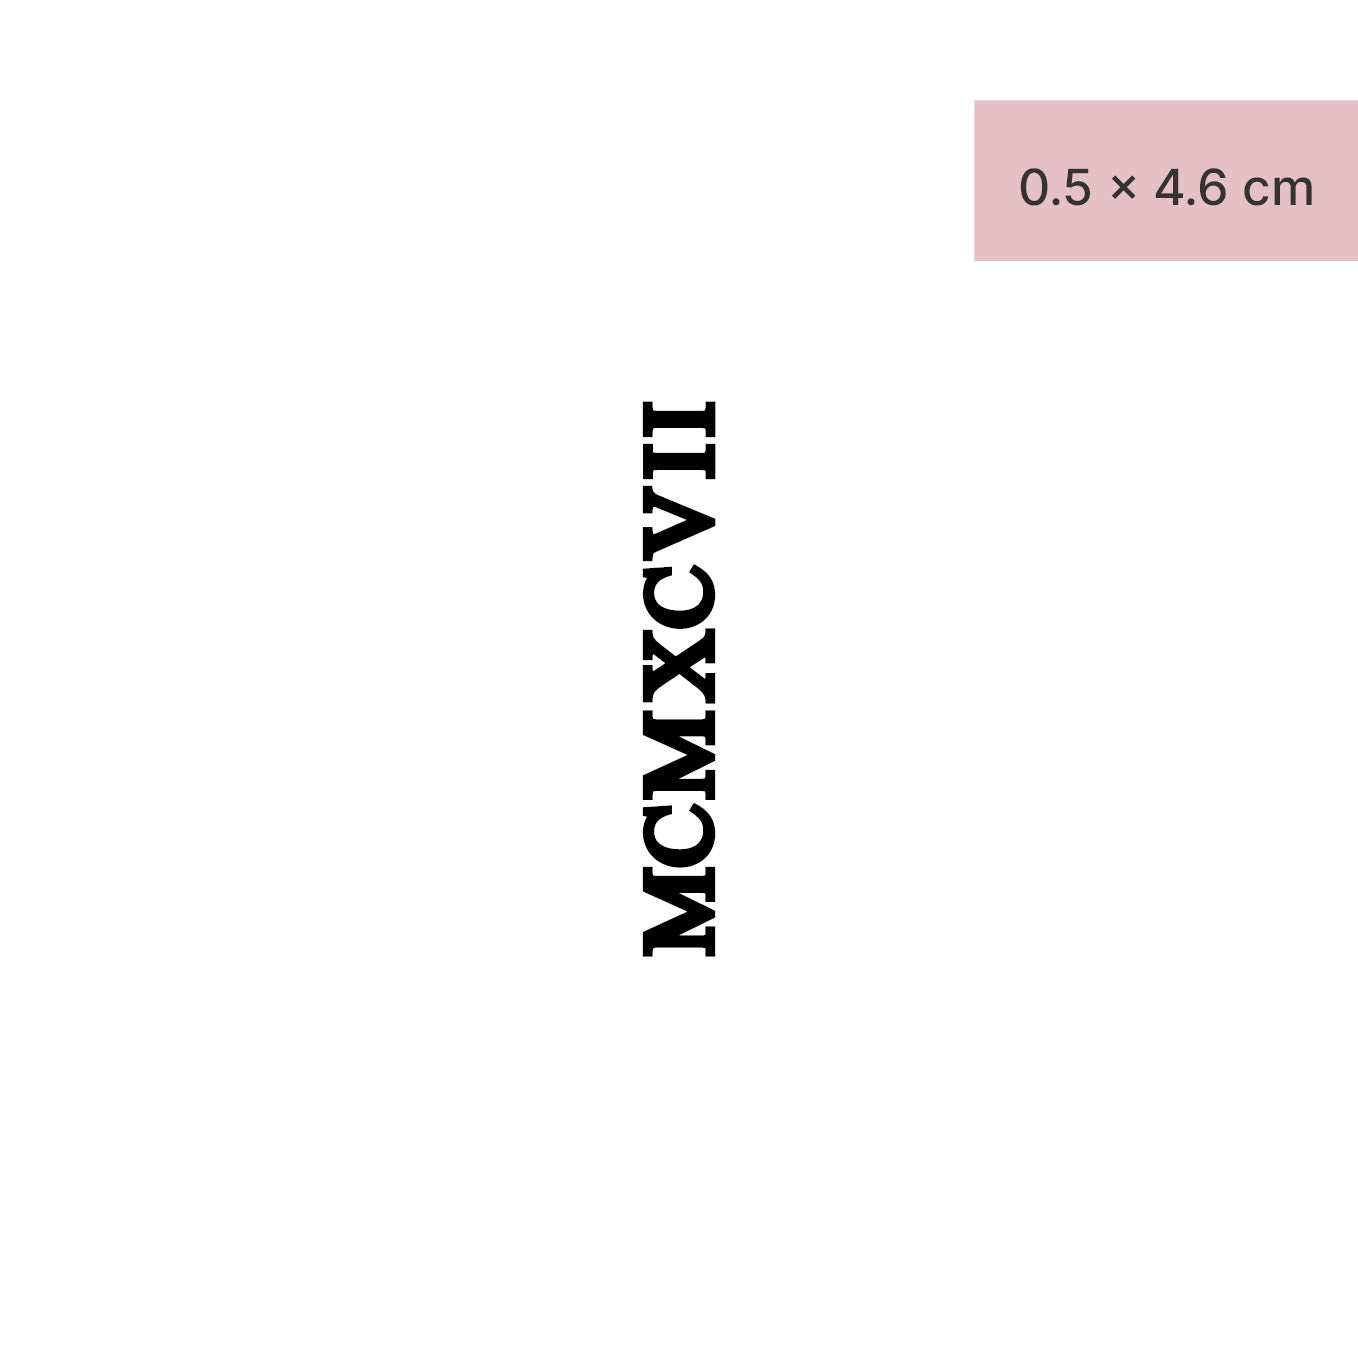 Zahlen Tattoo Römische Zahl MCMXCVII (1997) von minink, der Marke für temporäre Tattoos.